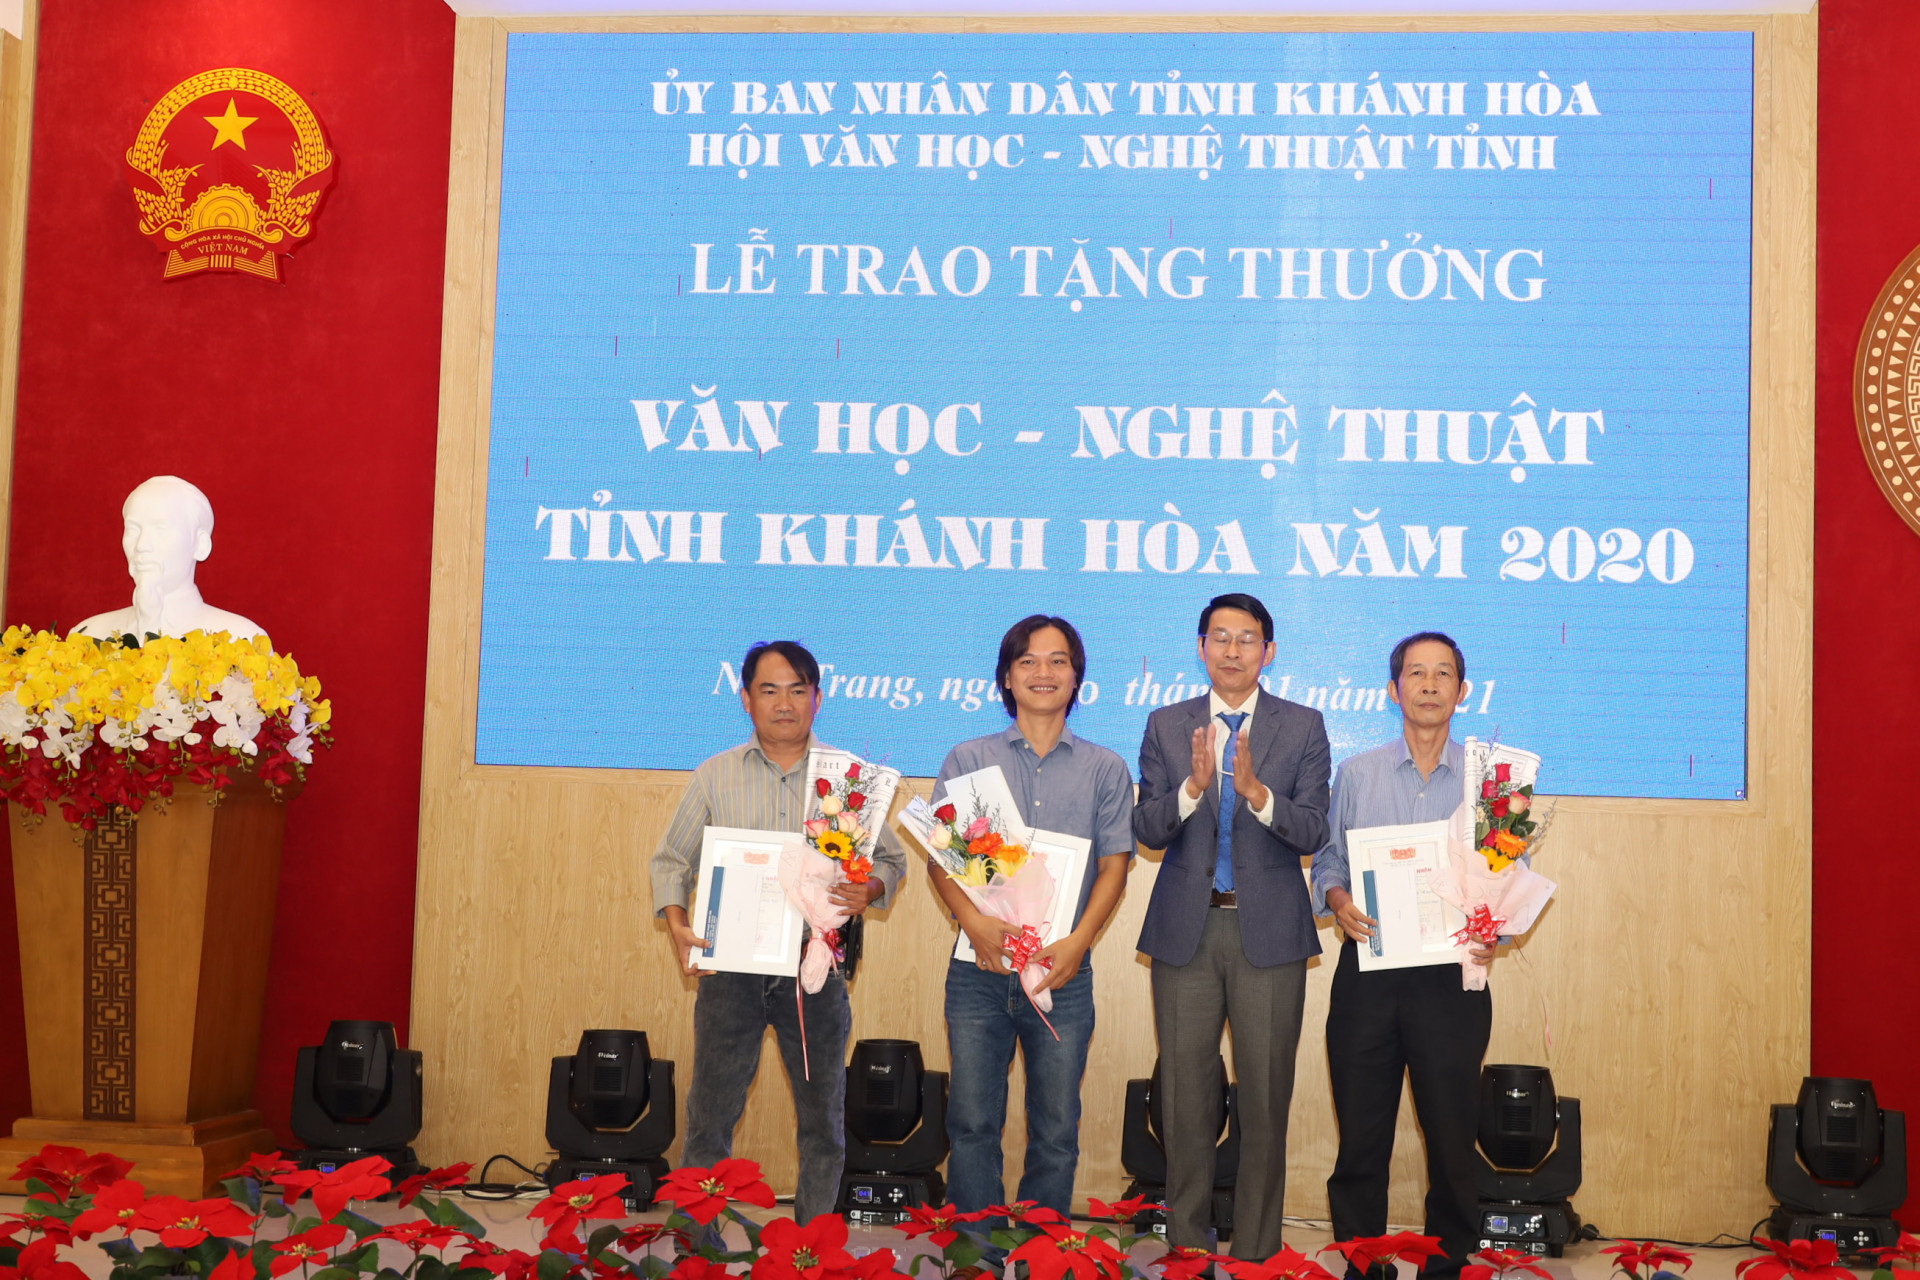  Ông Đinh Văn Thiệu trao Tặng thưởng VHNT tỉnh Khánh Hòa năm 2020 cho các tác giả có tác phẩm đạt giải A. 